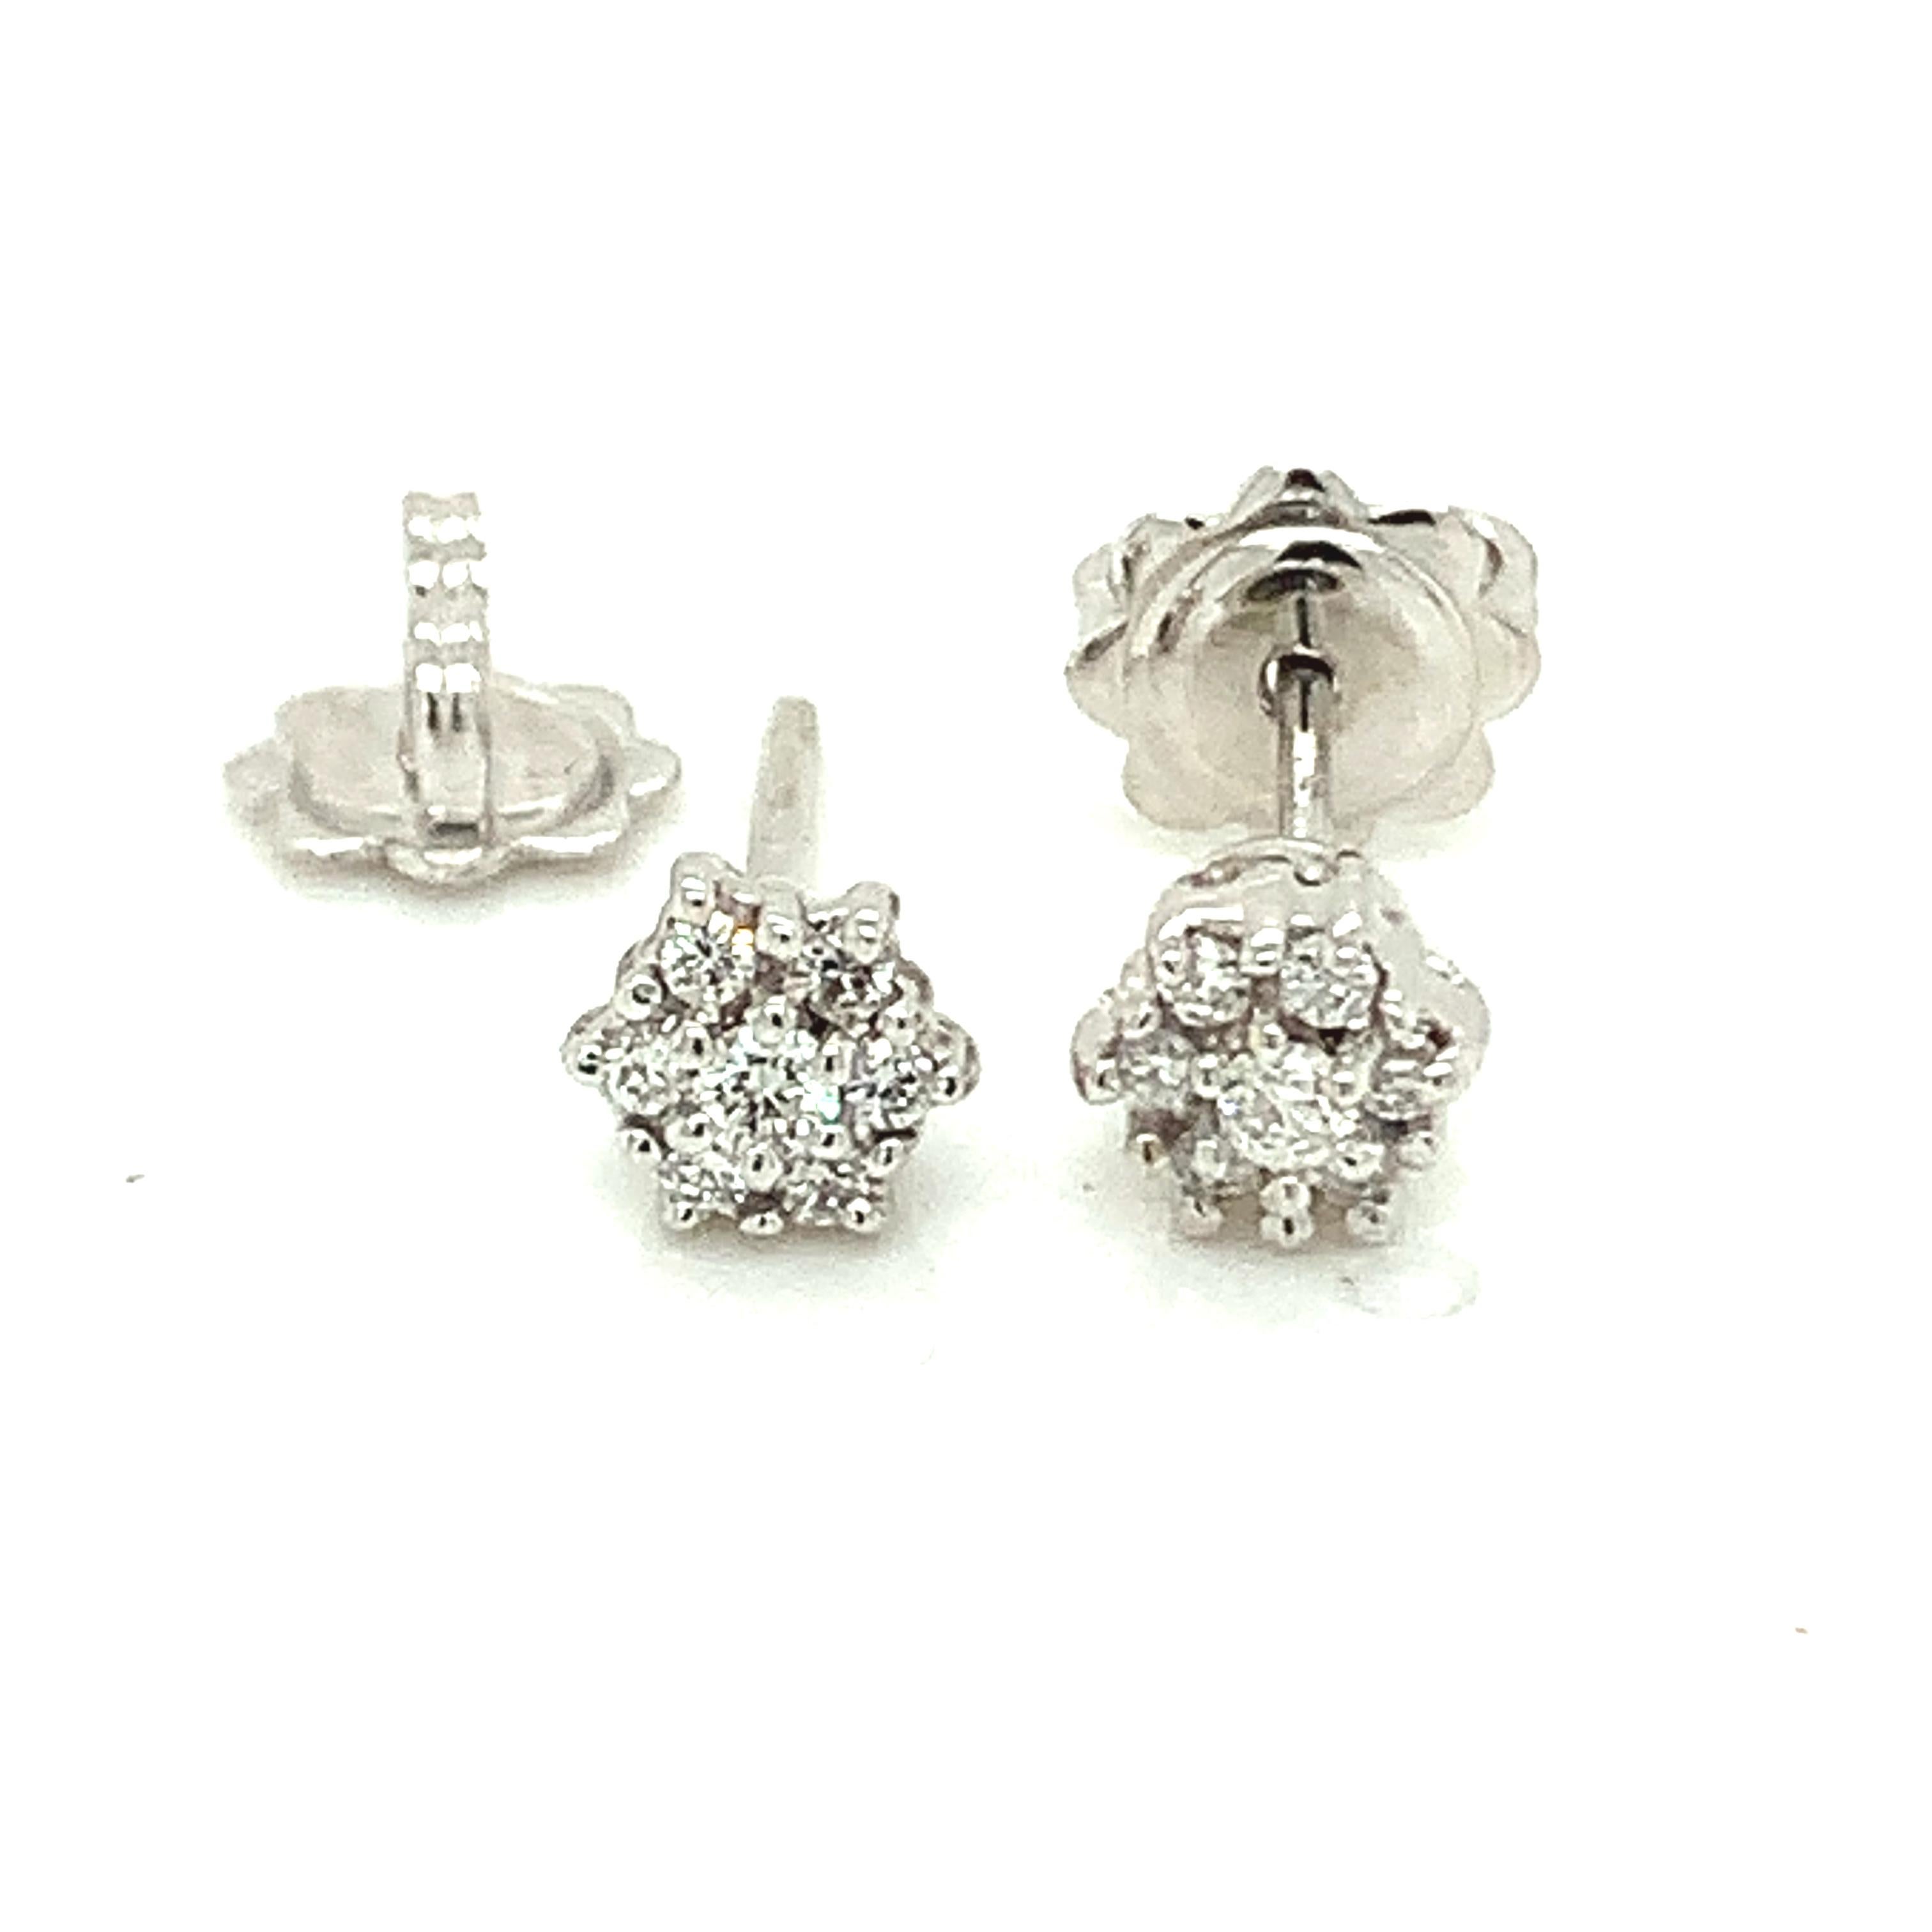 Petits clous classiques Garavelli, en or blanc 18 kt avec diamants blancs.
Boucles d'oreilles taille 7 mm
Or grs : 2.57
DIAMANTS ct : 0,38
